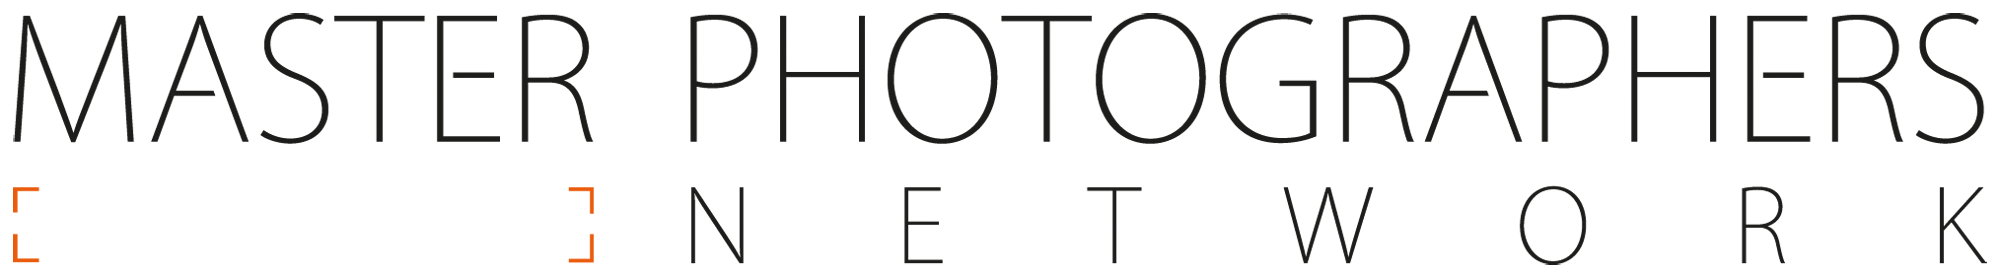 Logo Master Photographers Network